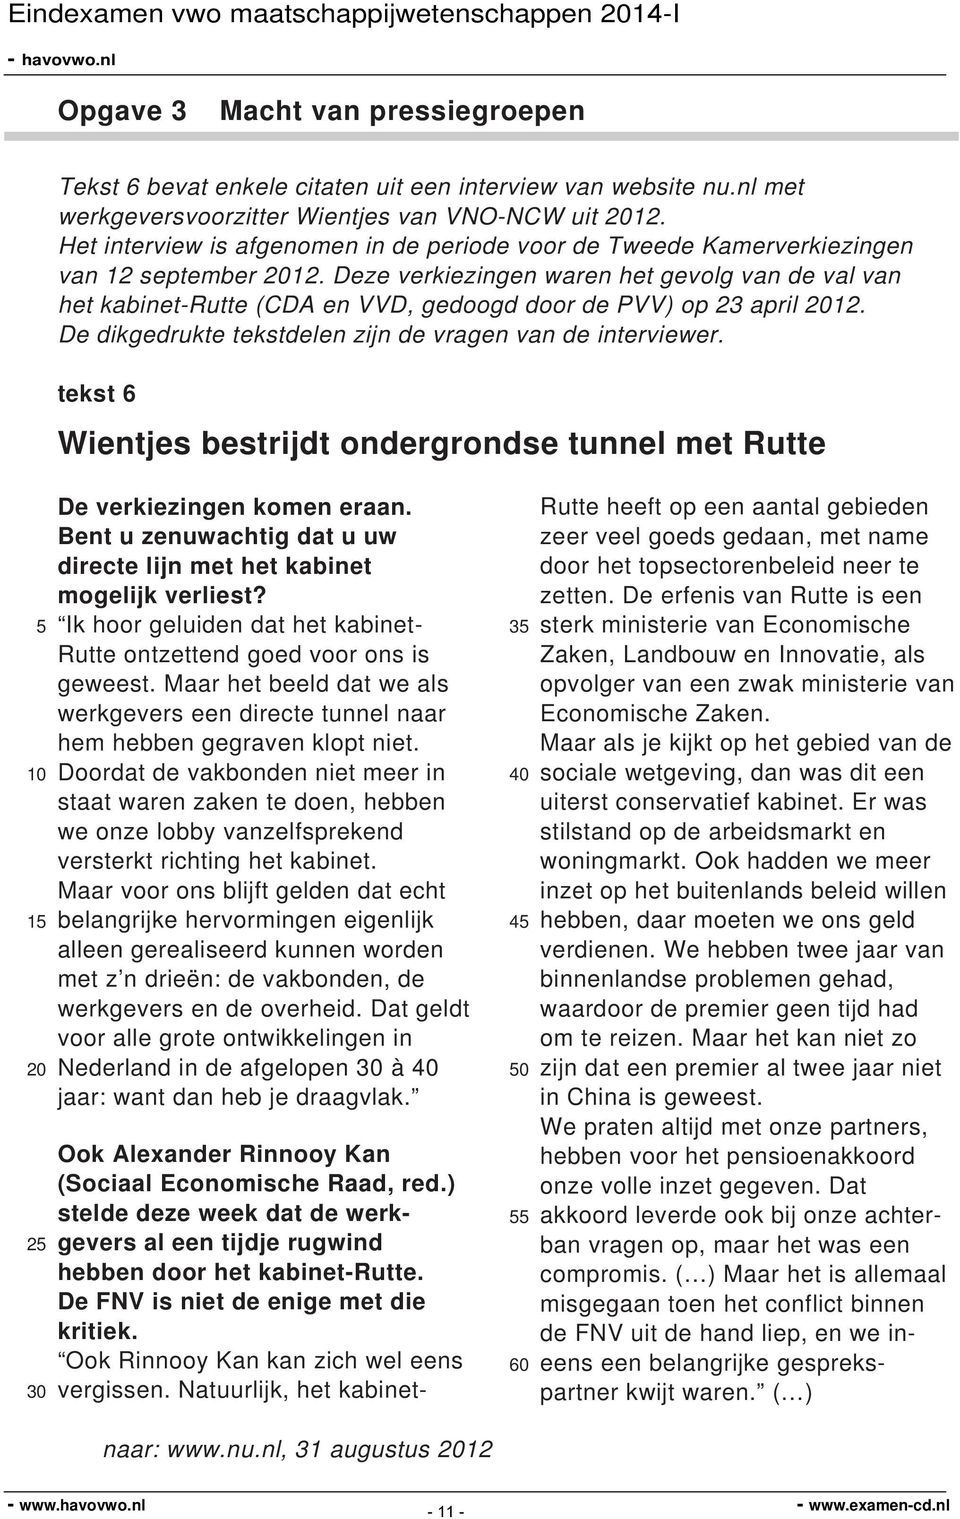 Deze verkiezingen waren het gevolg van de val van het kabinet-rutte (CDA en VVD, gedoogd door de PVV) op 23 april 12. De dikgedrukte tekstdelen zijn de vragen van de interviewer.